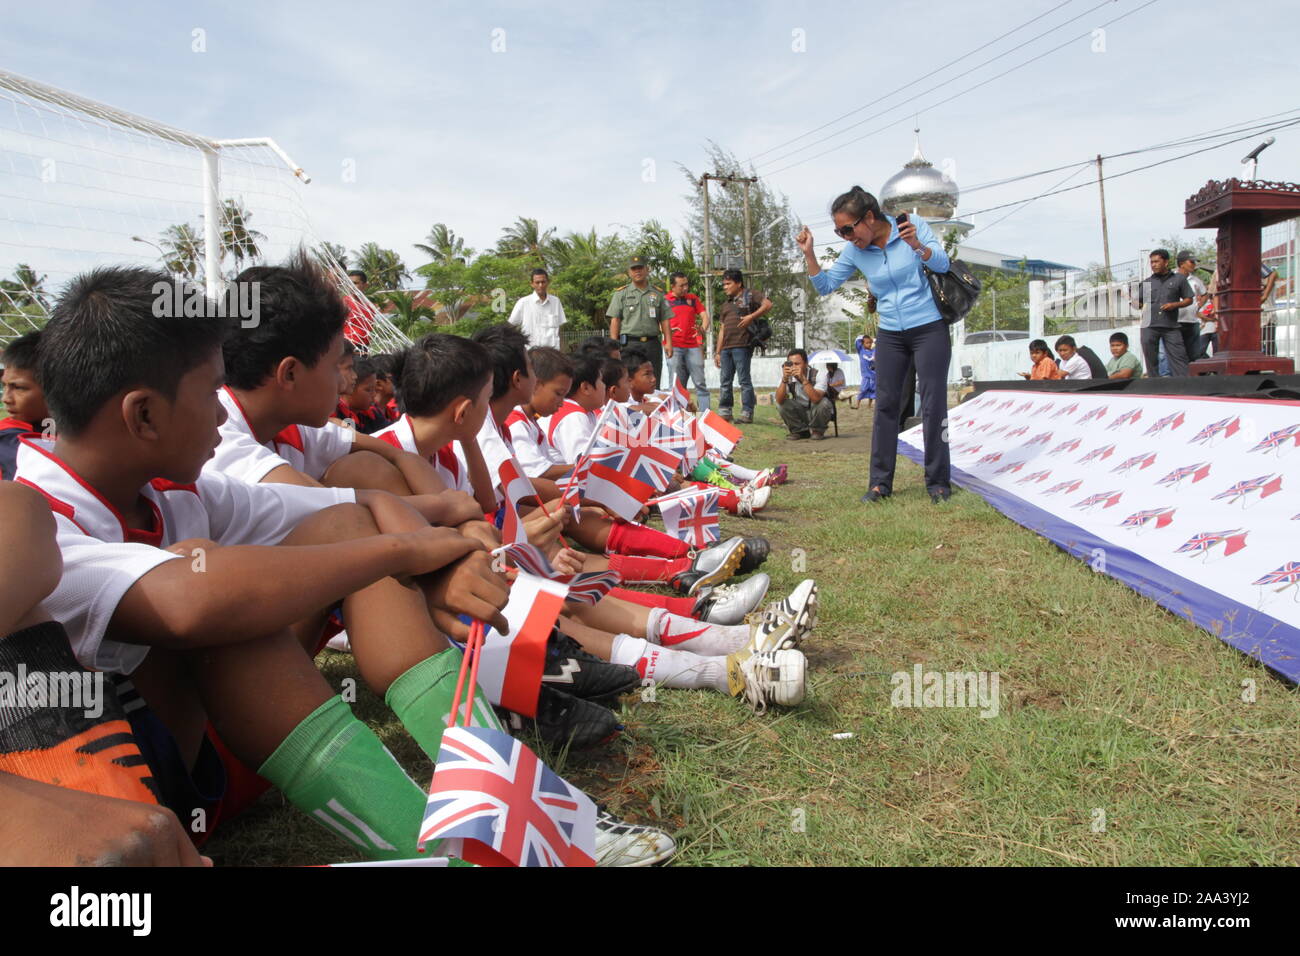 Sayeeda Warsi, für die Olympischen Spiele 2012 in London Accord Mission" hin zu einem dauerhaften Frieden', in Banda Aceh, Sumatra, Indonesien Stockfoto